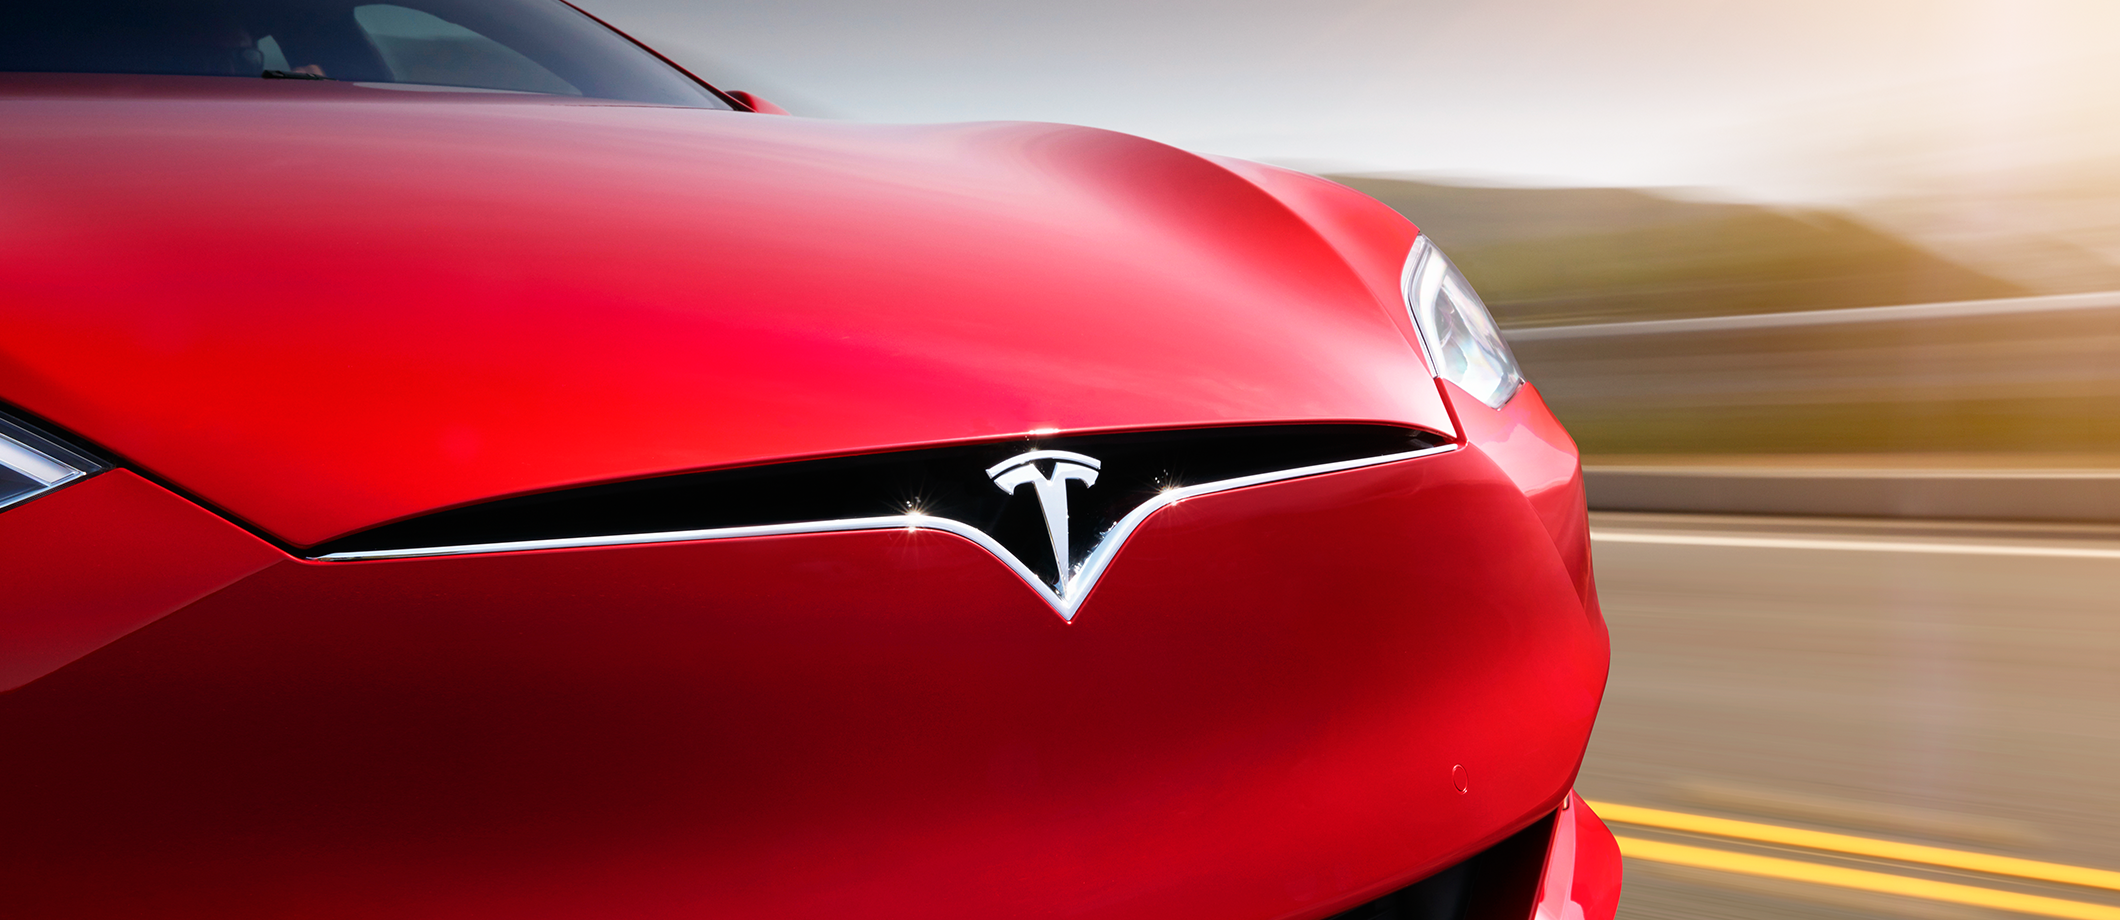 radioactiviteit ondergeschikt desinfecteren Elon Musk promises to take Tesla Model S to 'Plaid' with new powertrain |  TechCrunch